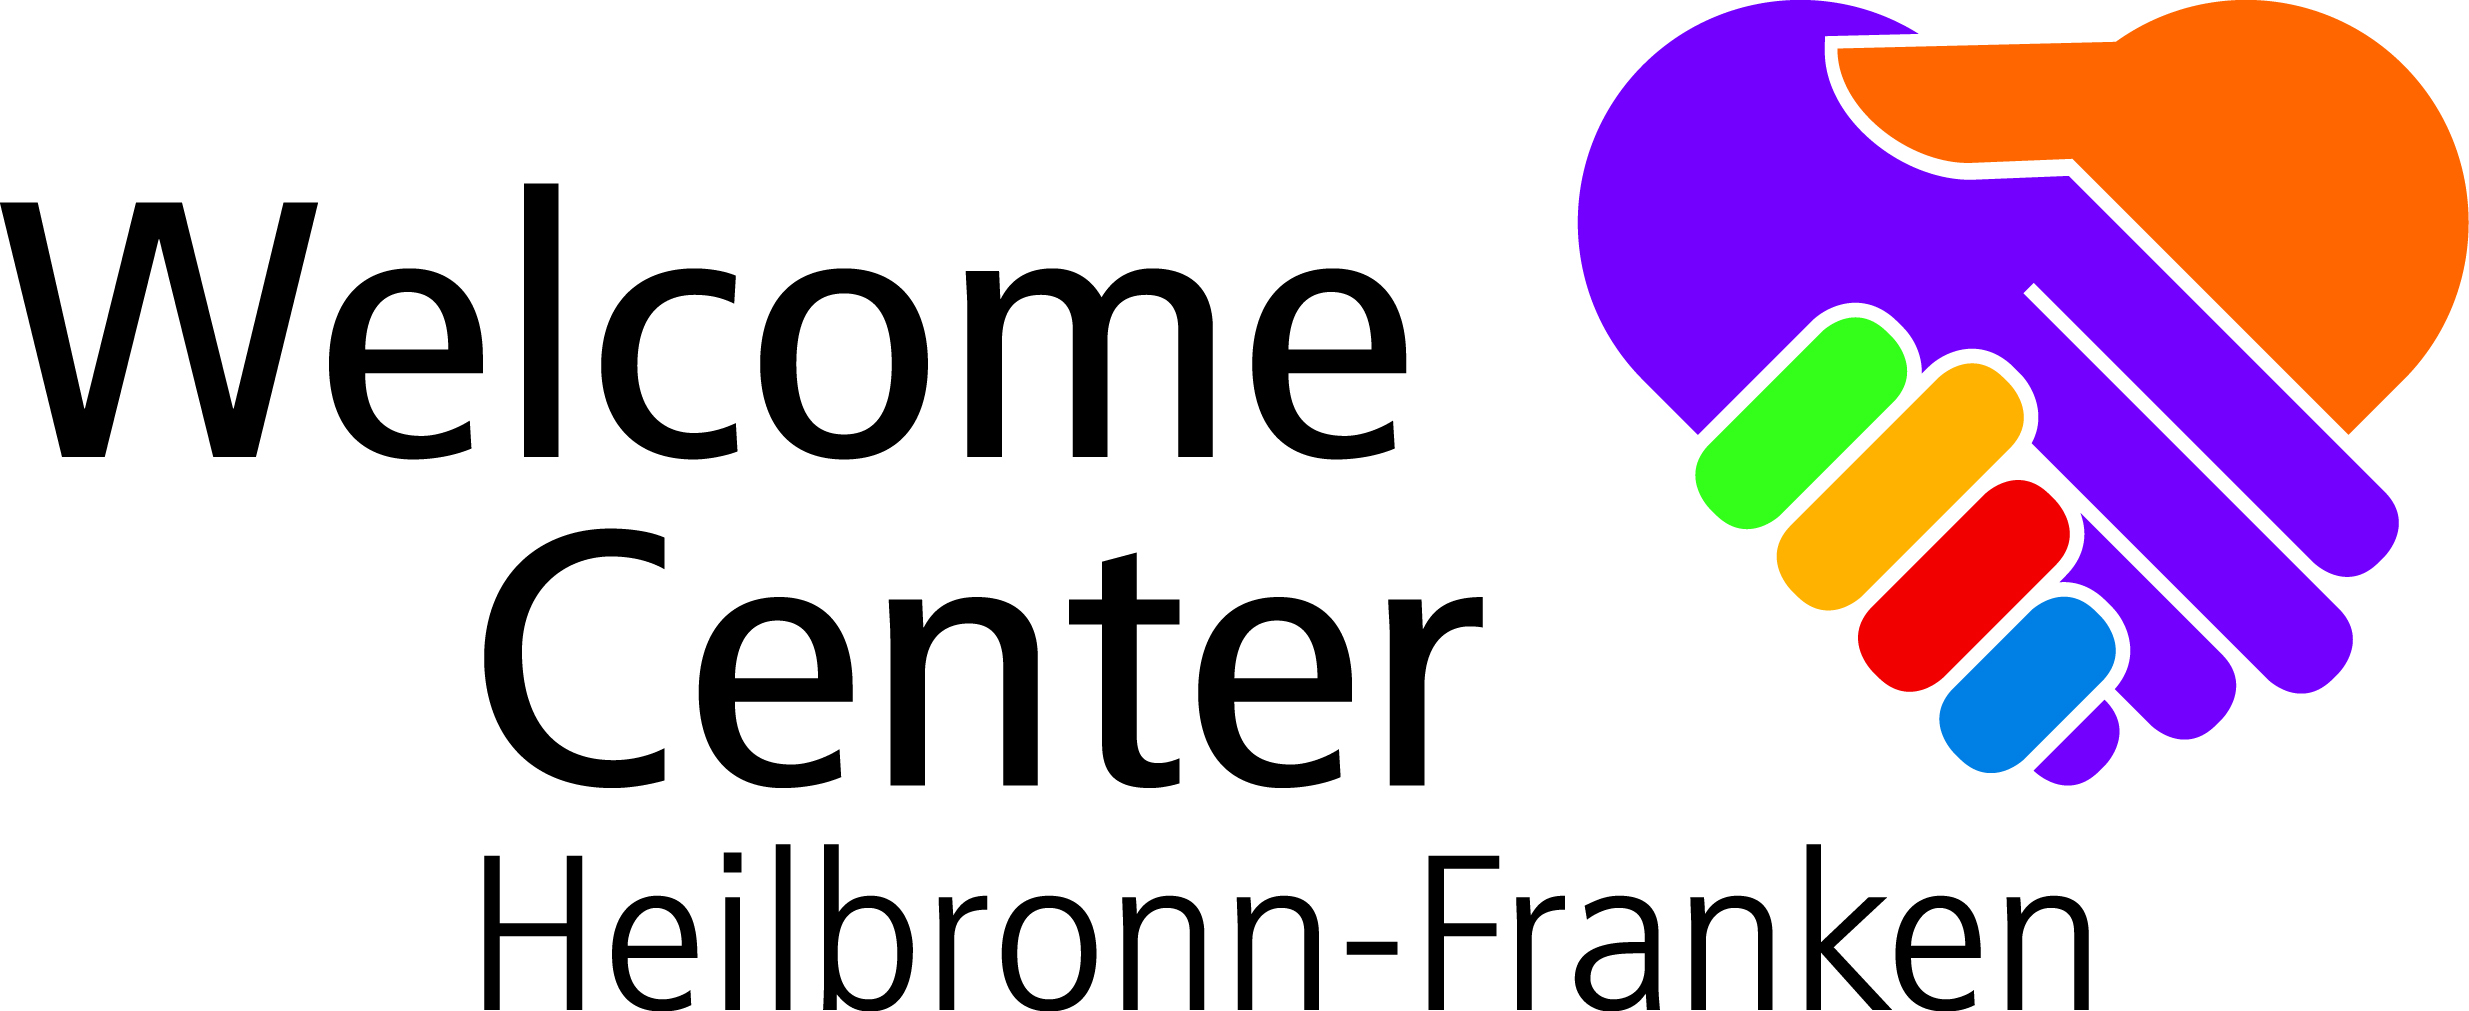 Das Bild zeigt das Logo des Welcome Center mit zwei sich reichenden Händen in Herzform.